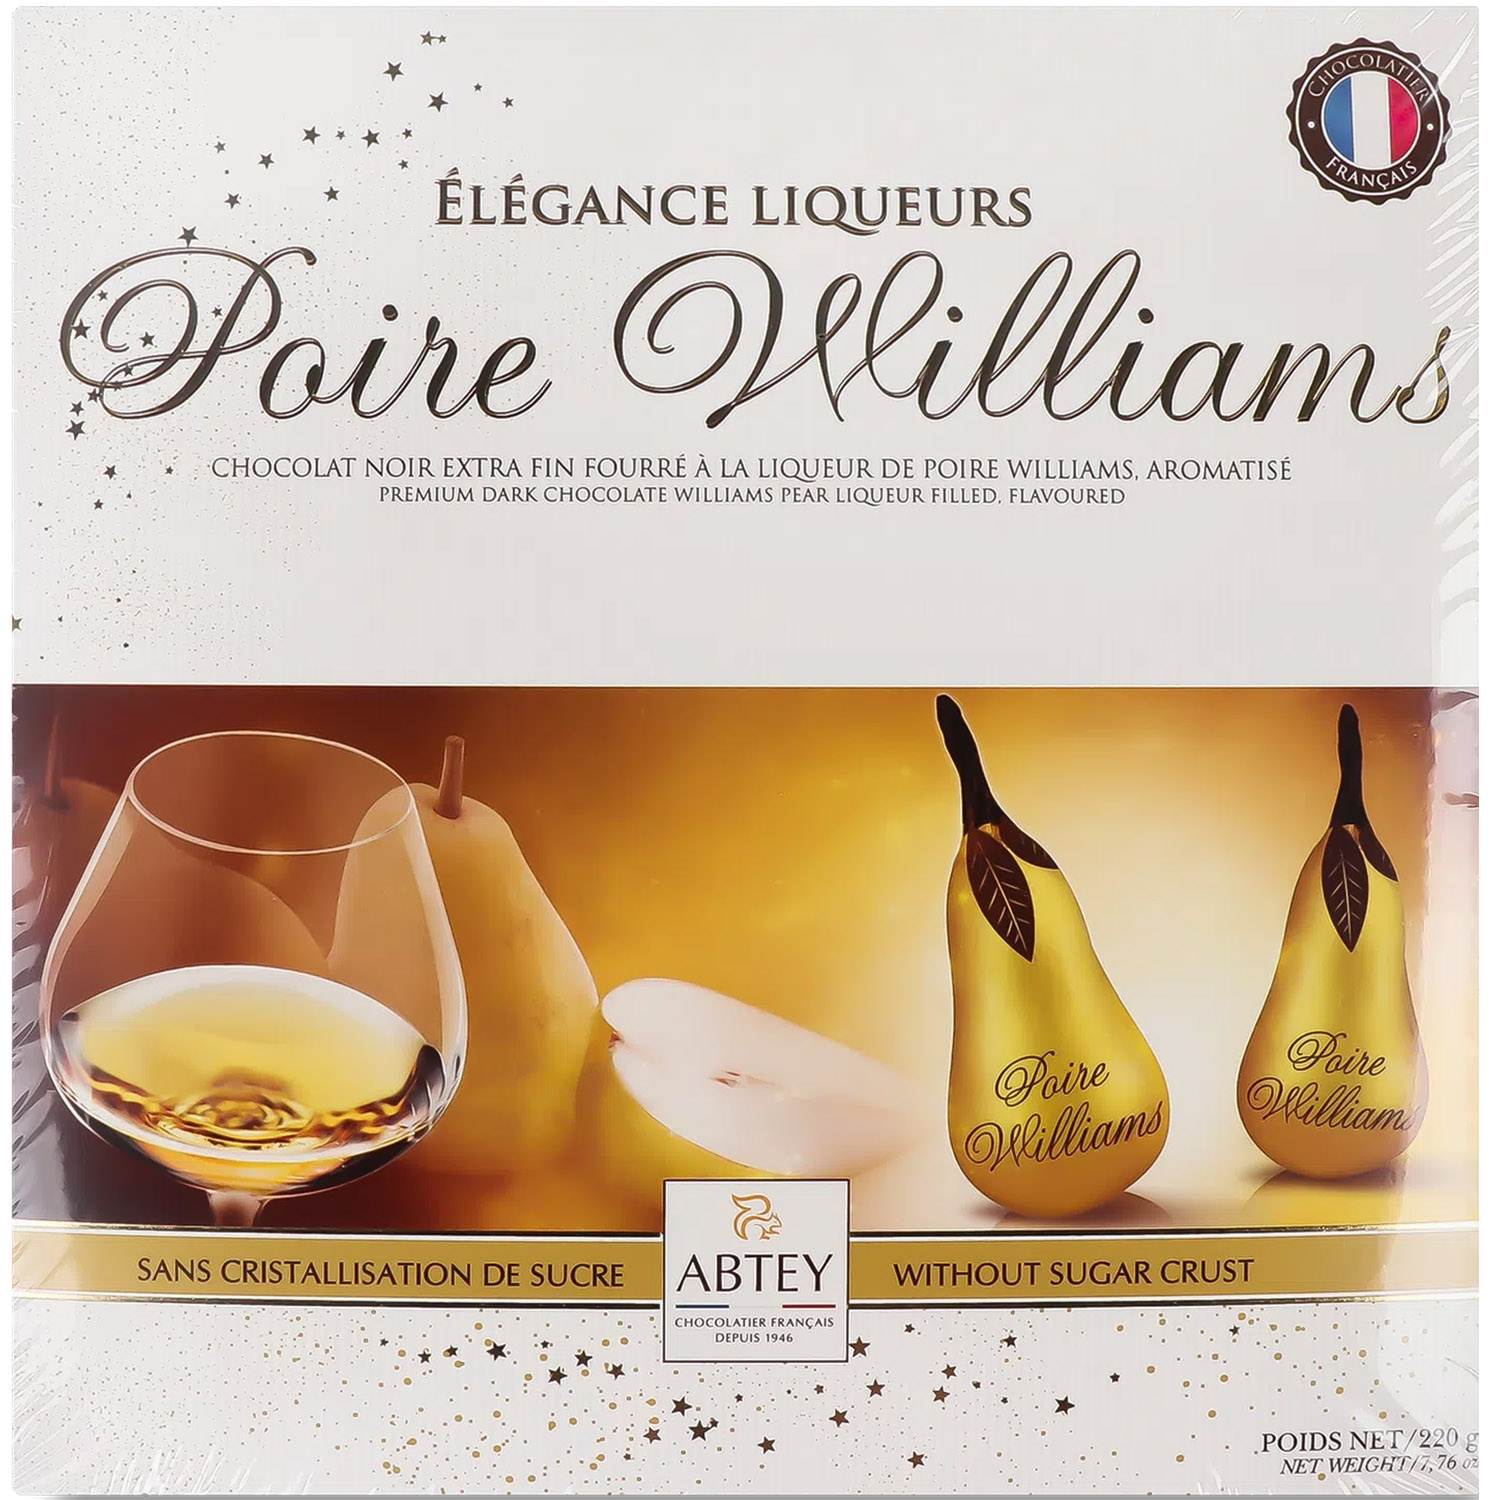 Конфеты Abtey Poire William Elegance Liqueur Chocolate бренди с грушей 220 г (799004) - фото 1